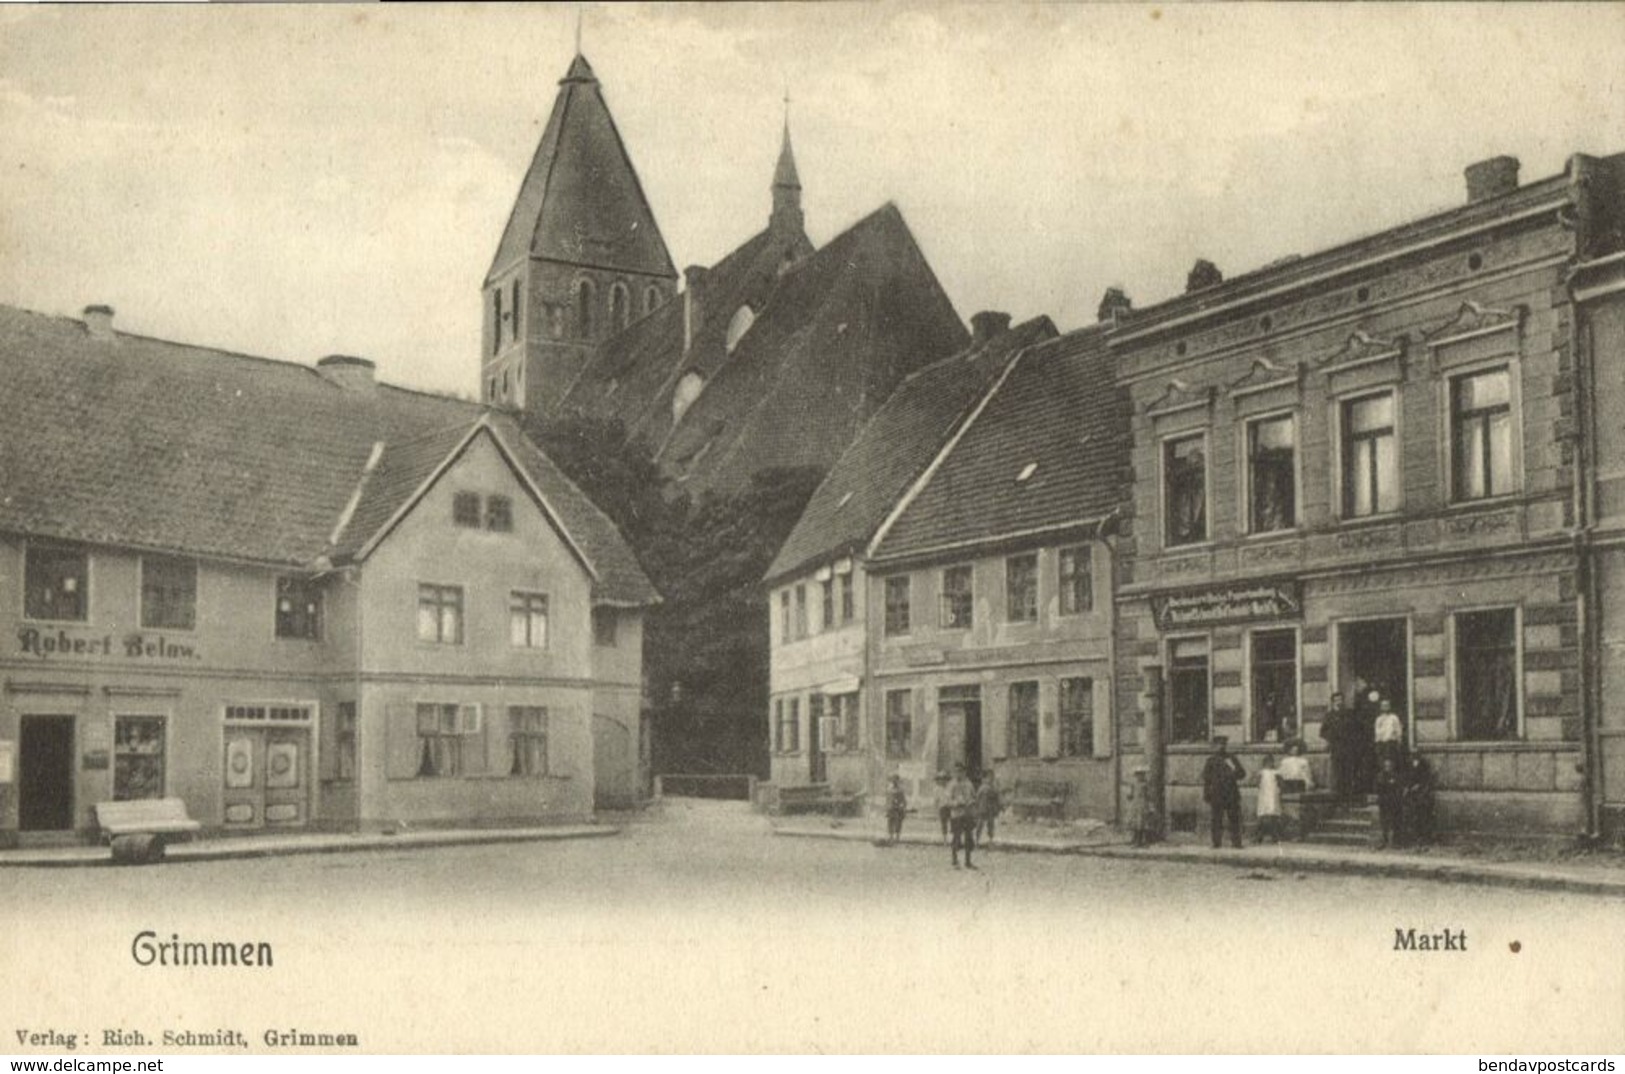 GRIMMEN, Markt, Hotel, Kirche (1910s) Rich. Schmidt AK - Grimmen